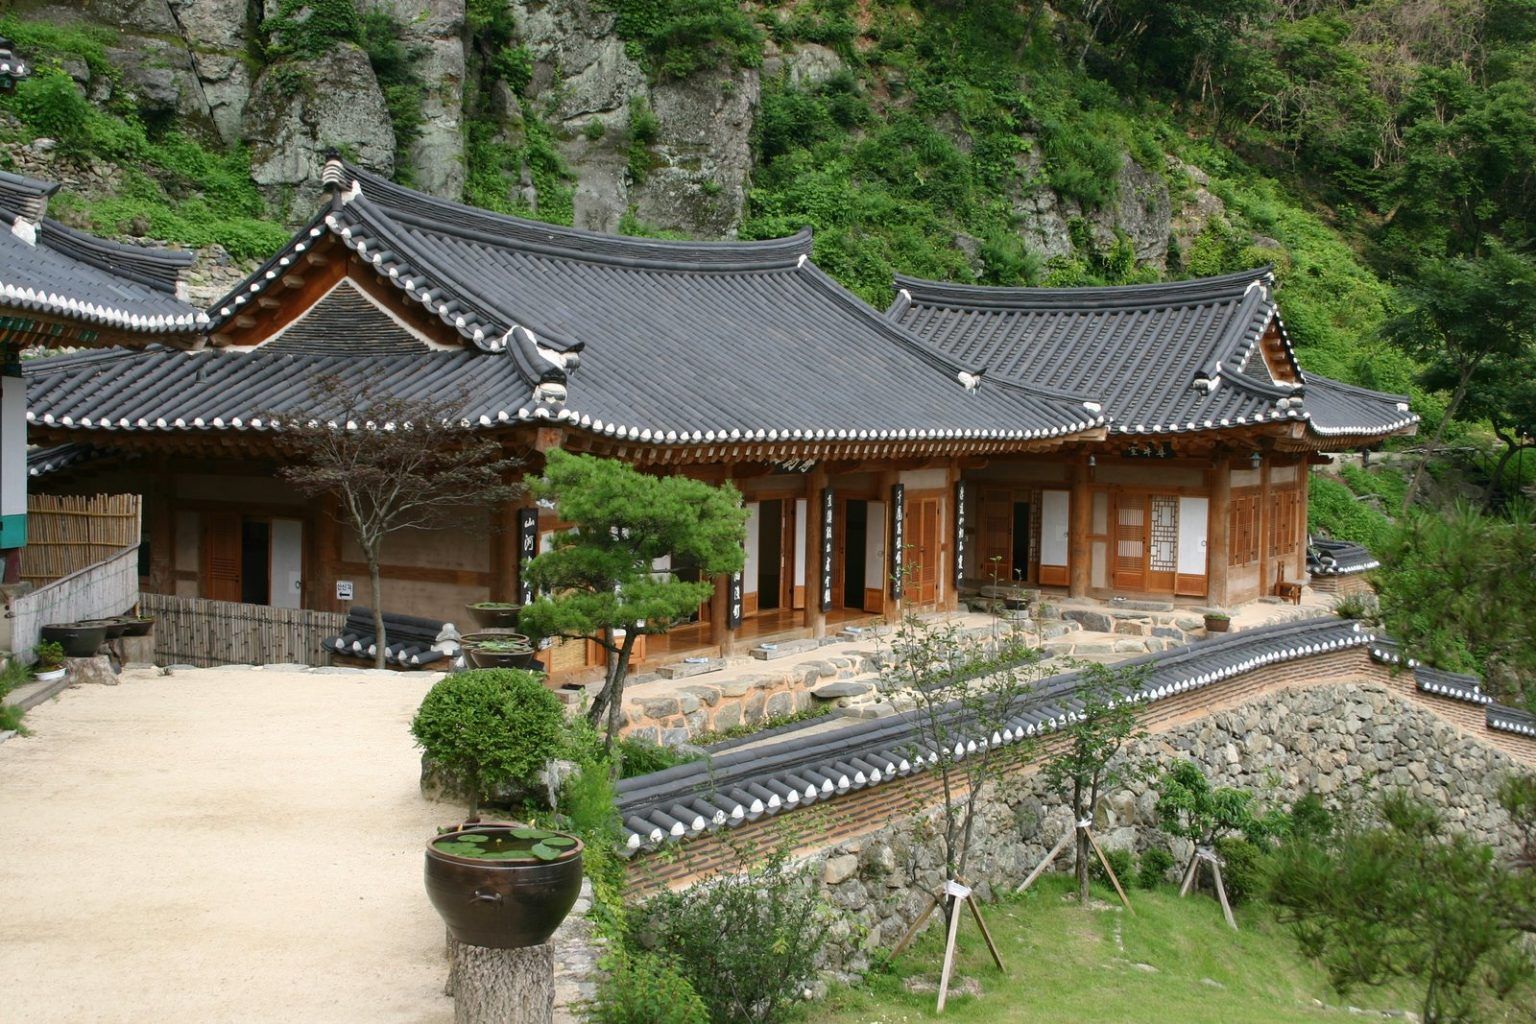 Rumah Tradisional Korea Hanok Harmonis Unik Sederhana Namun Penuh Gaya Paket Trip Dan